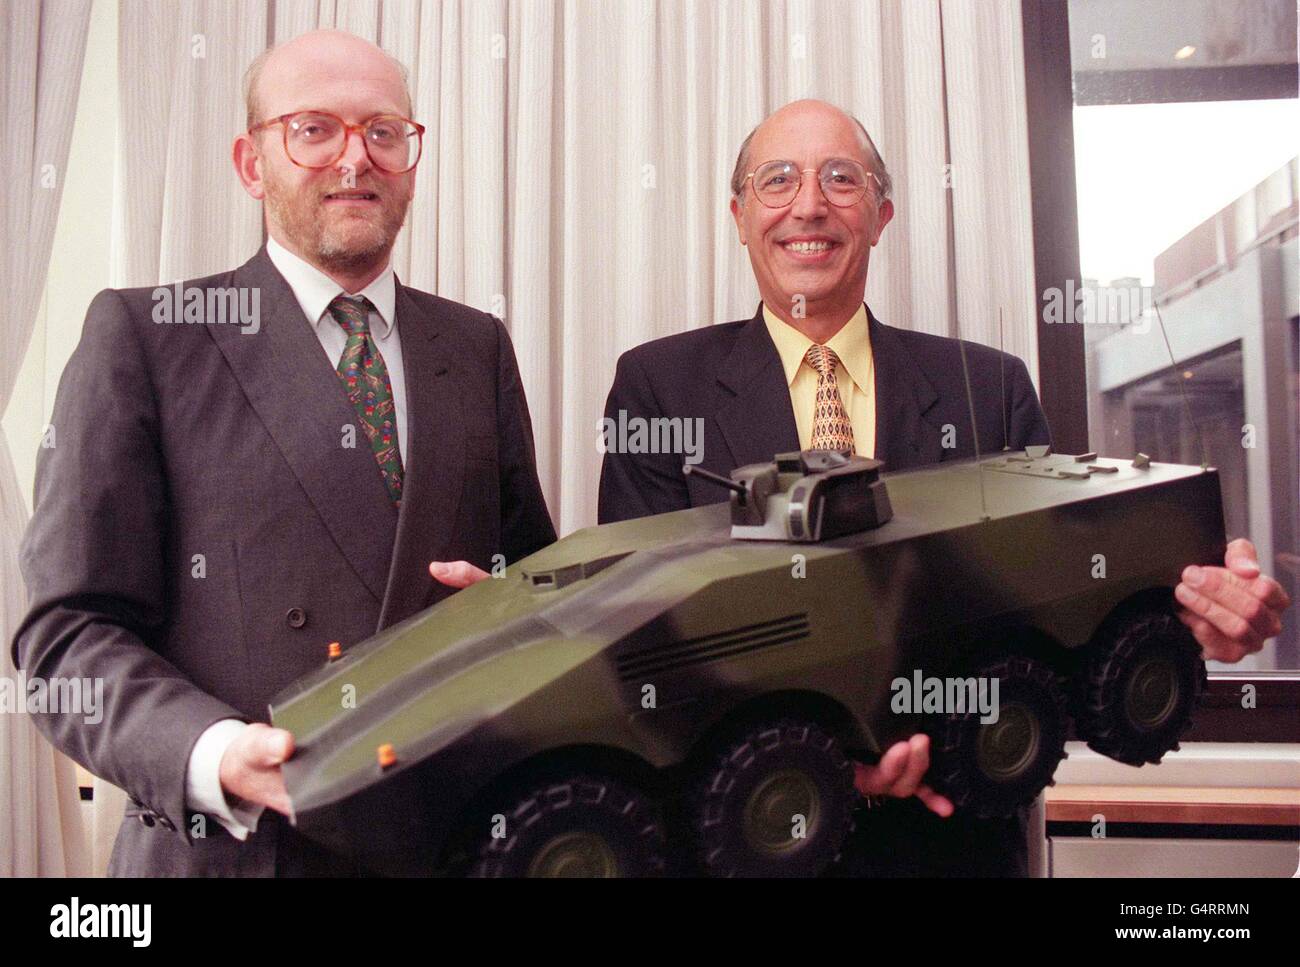 BIBLIOTHEKSFILER vom 15.9.98 des Vorsitzenden der Alvis plc Nick Prest (links) und des Geschäftsführers der GKN Defense David Wright mit einem maßstabsgespielten Modell des Mehrzweckarmierungsfahrzeugs (MRAV). Am Freitag, den 5. November 1999, wurde bekannt gegeben, dass bis zu 500 Arbeitsplätze in der britischen Fertigung durch die Vergabe eines Großauftrages für das neue gepanzerte Fahrzeug für die britische und deutsche Armee gesichert wurden. Das achträdrige Schlachtfeld-Taxi wird von dem deutsch-geführten Artec-Konsortium gebaut, zu dem auch britische Fahrzeughersteller gehören, Alvis, das die Rümpfe in seinem Werk in Telford, Shropshire, bauen wird. PA Foto: Neil Stockfoto